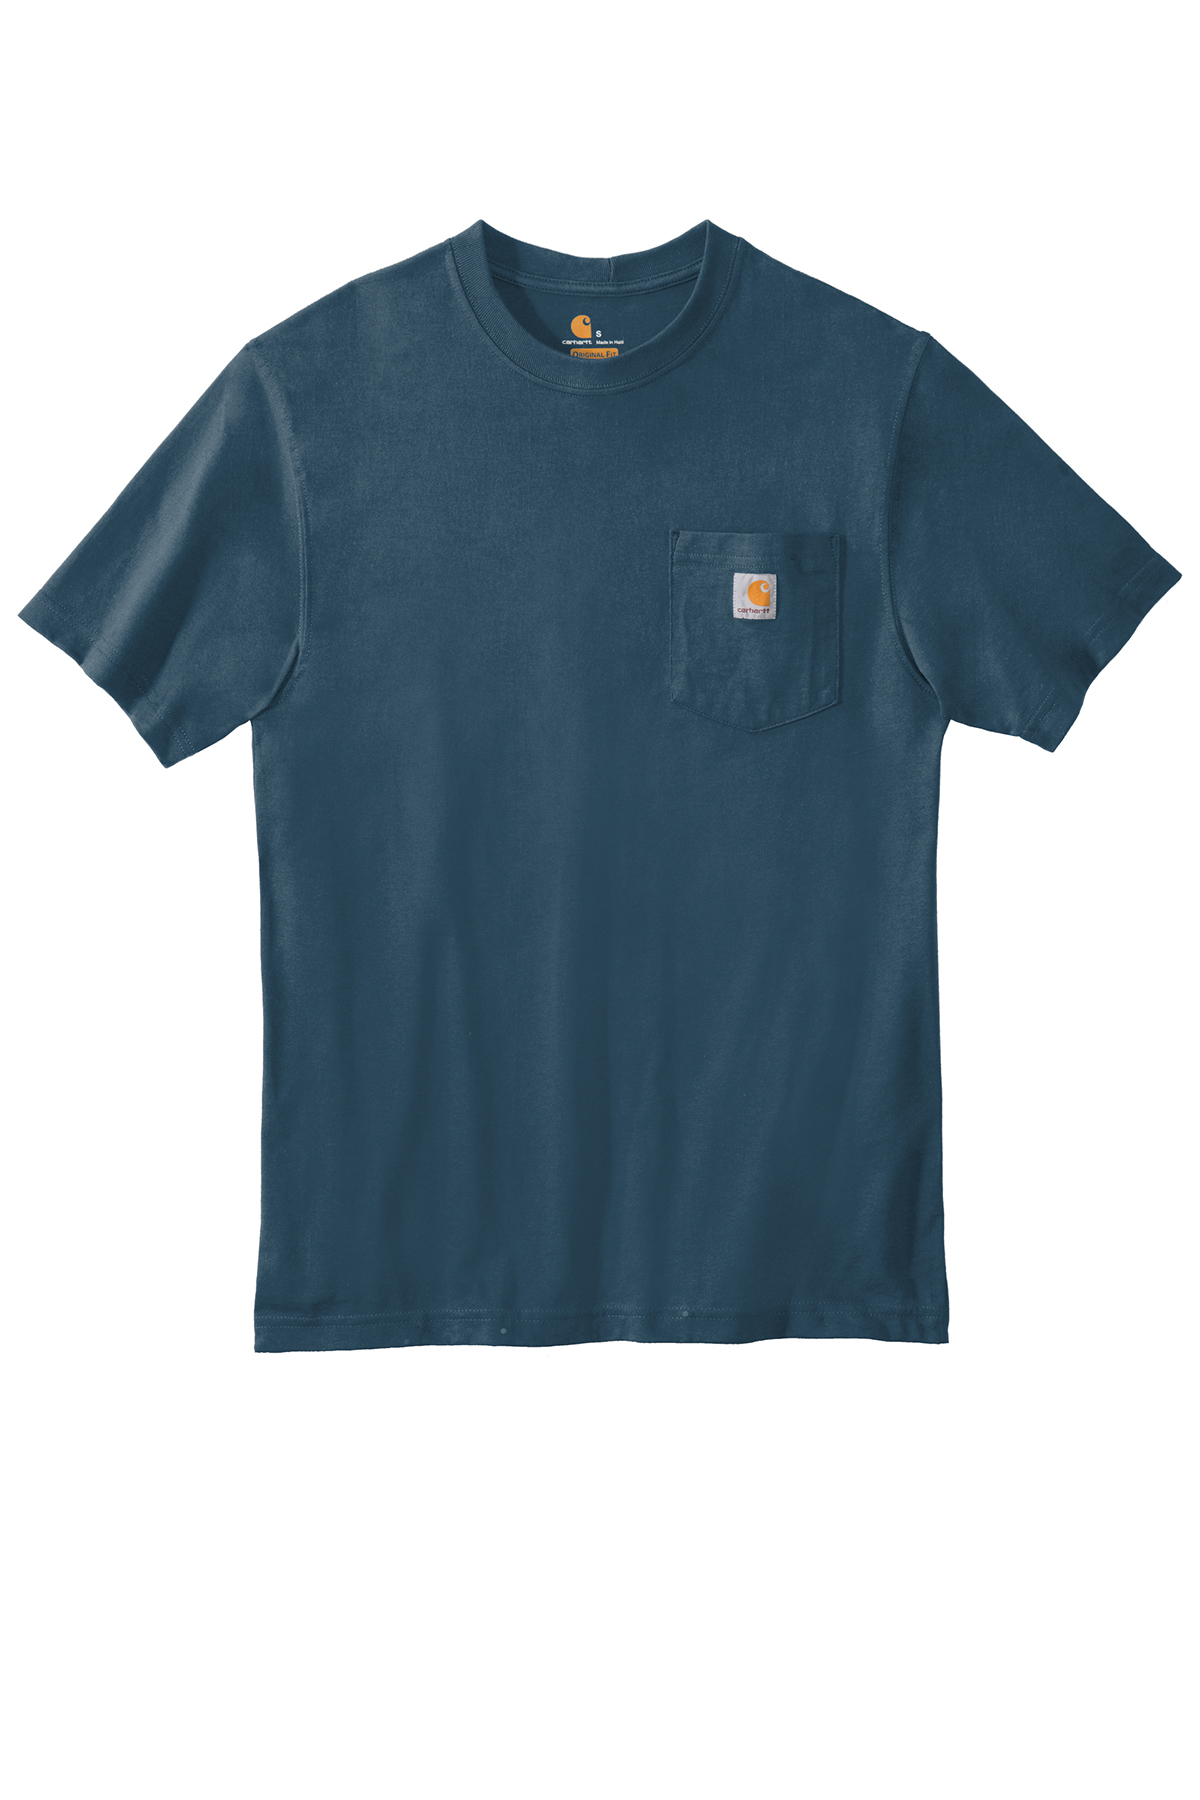 Carhartt ® Workwear Pocket Short Sleeve T-Shirt - Concept Design Studios,  Bozeman Montana